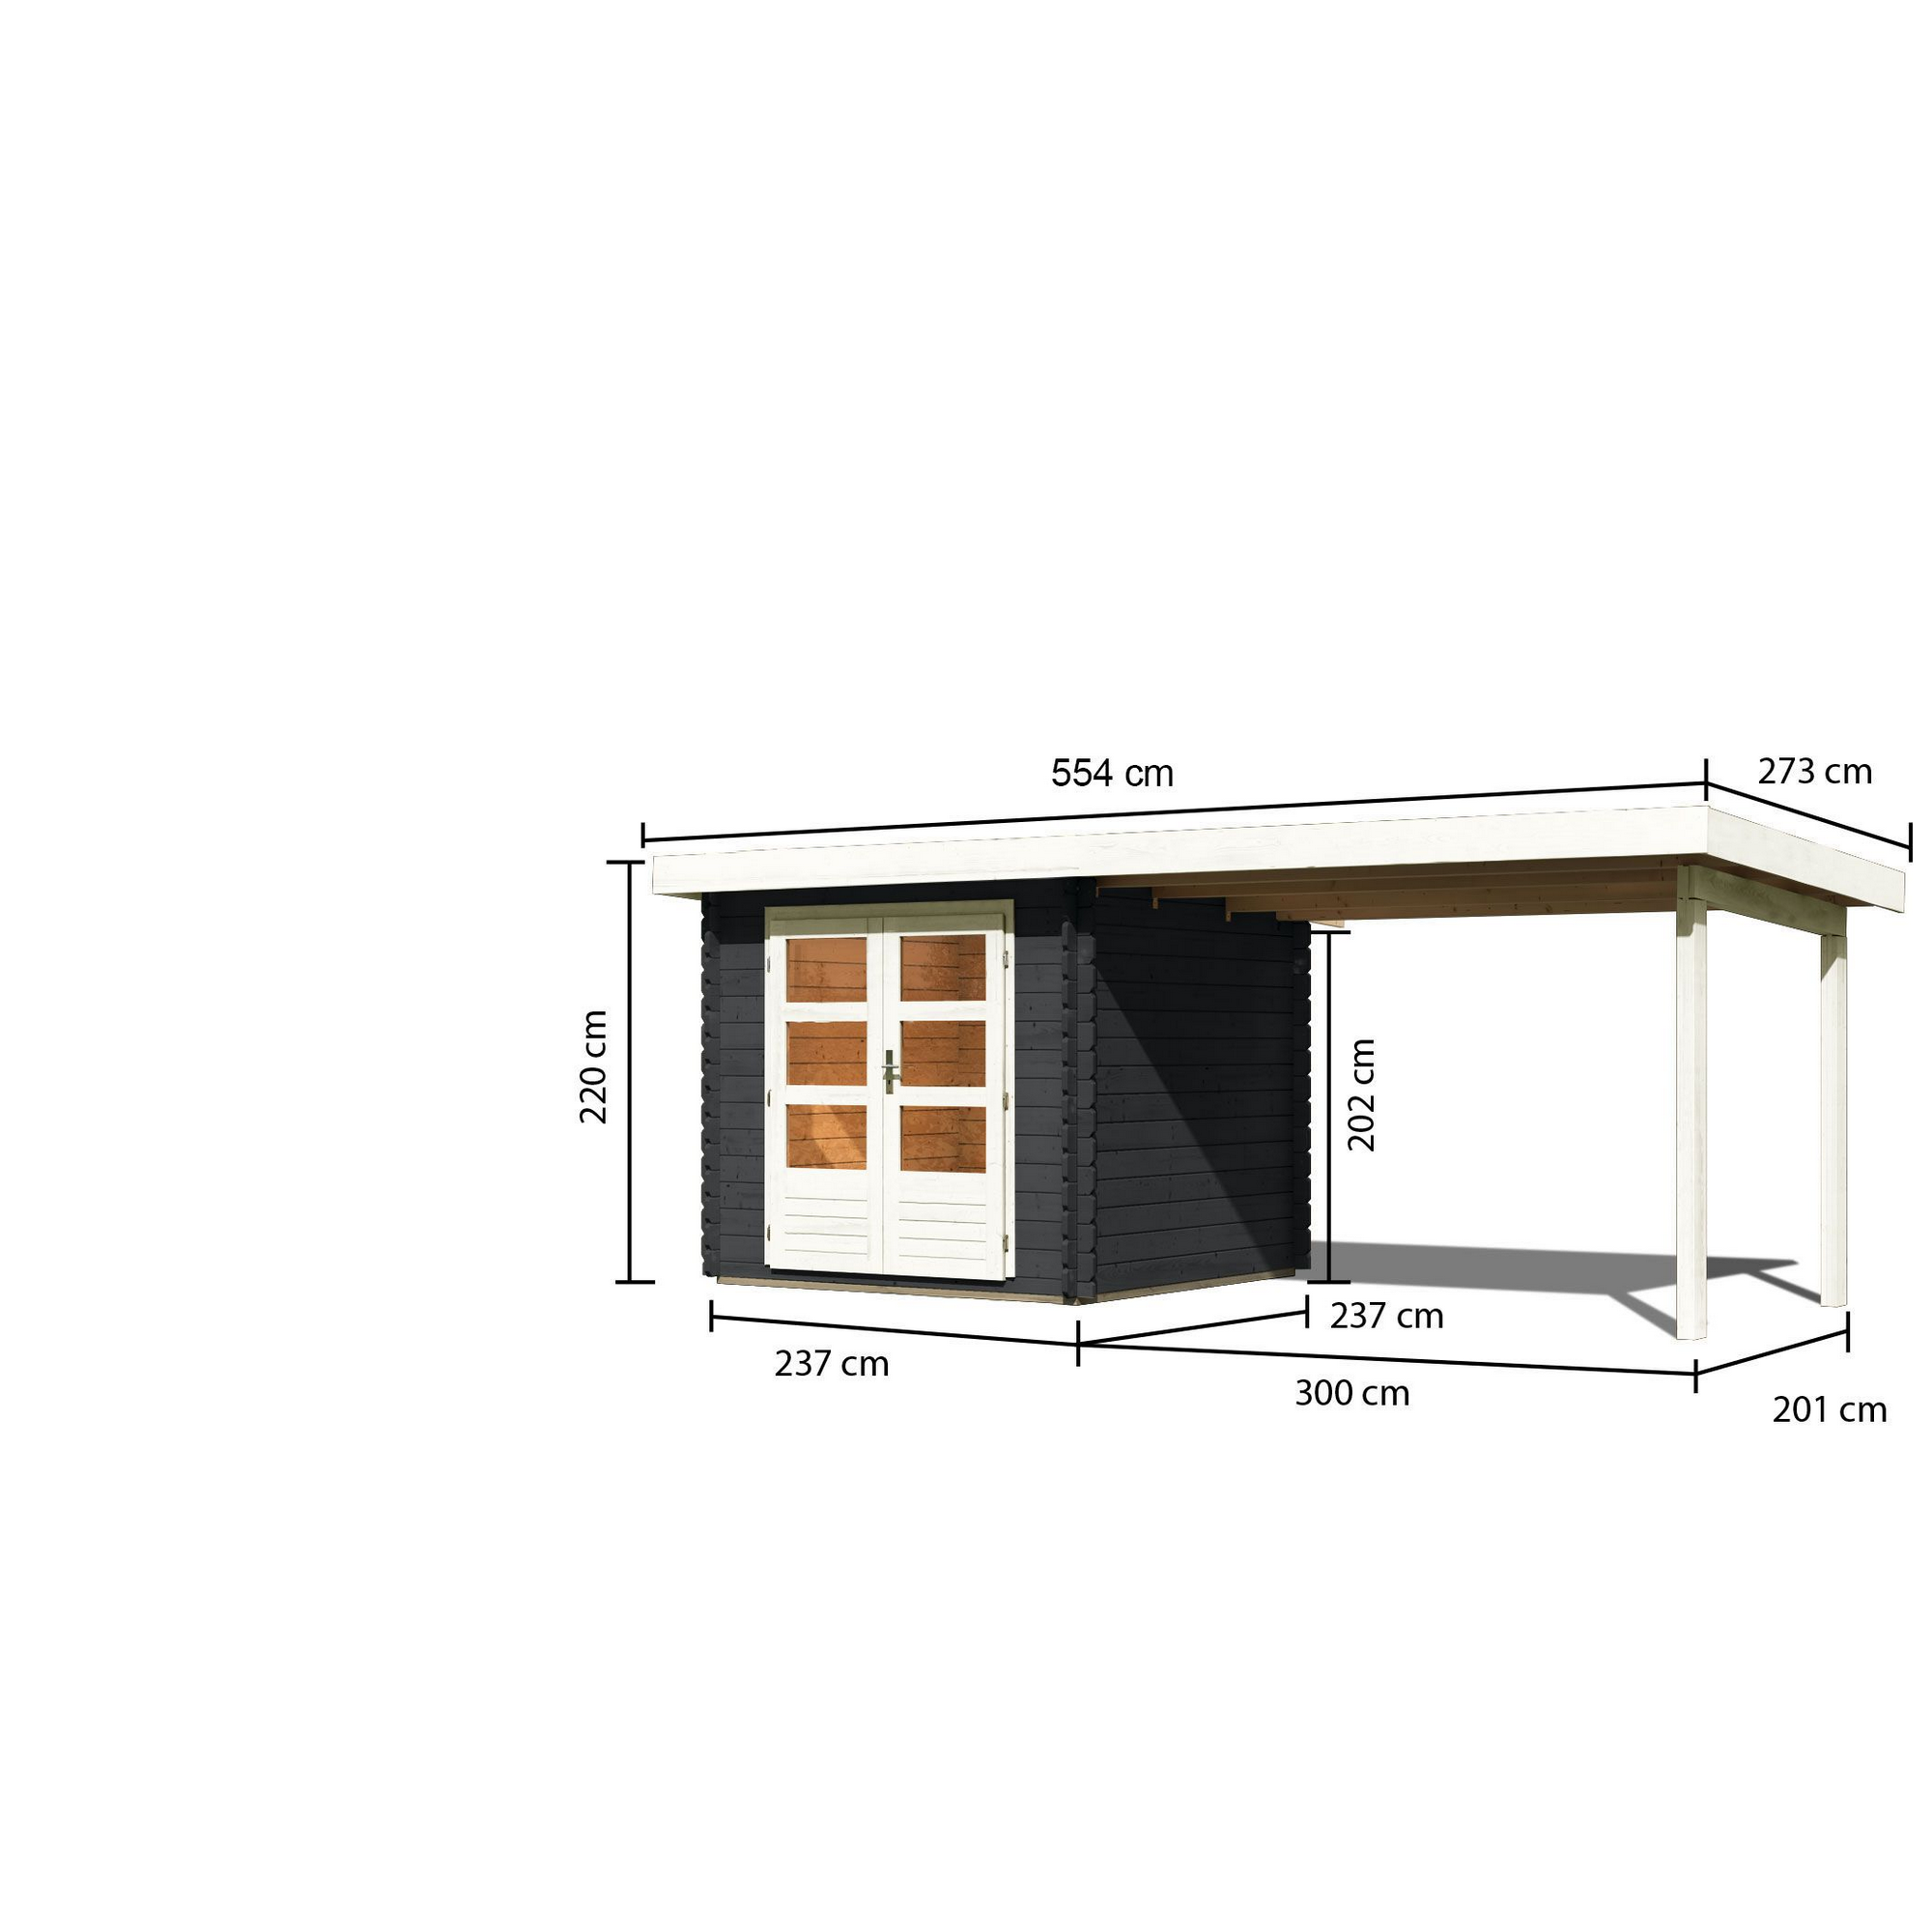 Gartenhaus-Set 'Kastrup 2' Fichtenholz anthrazit 220 x 237 x 237 cm + product picture